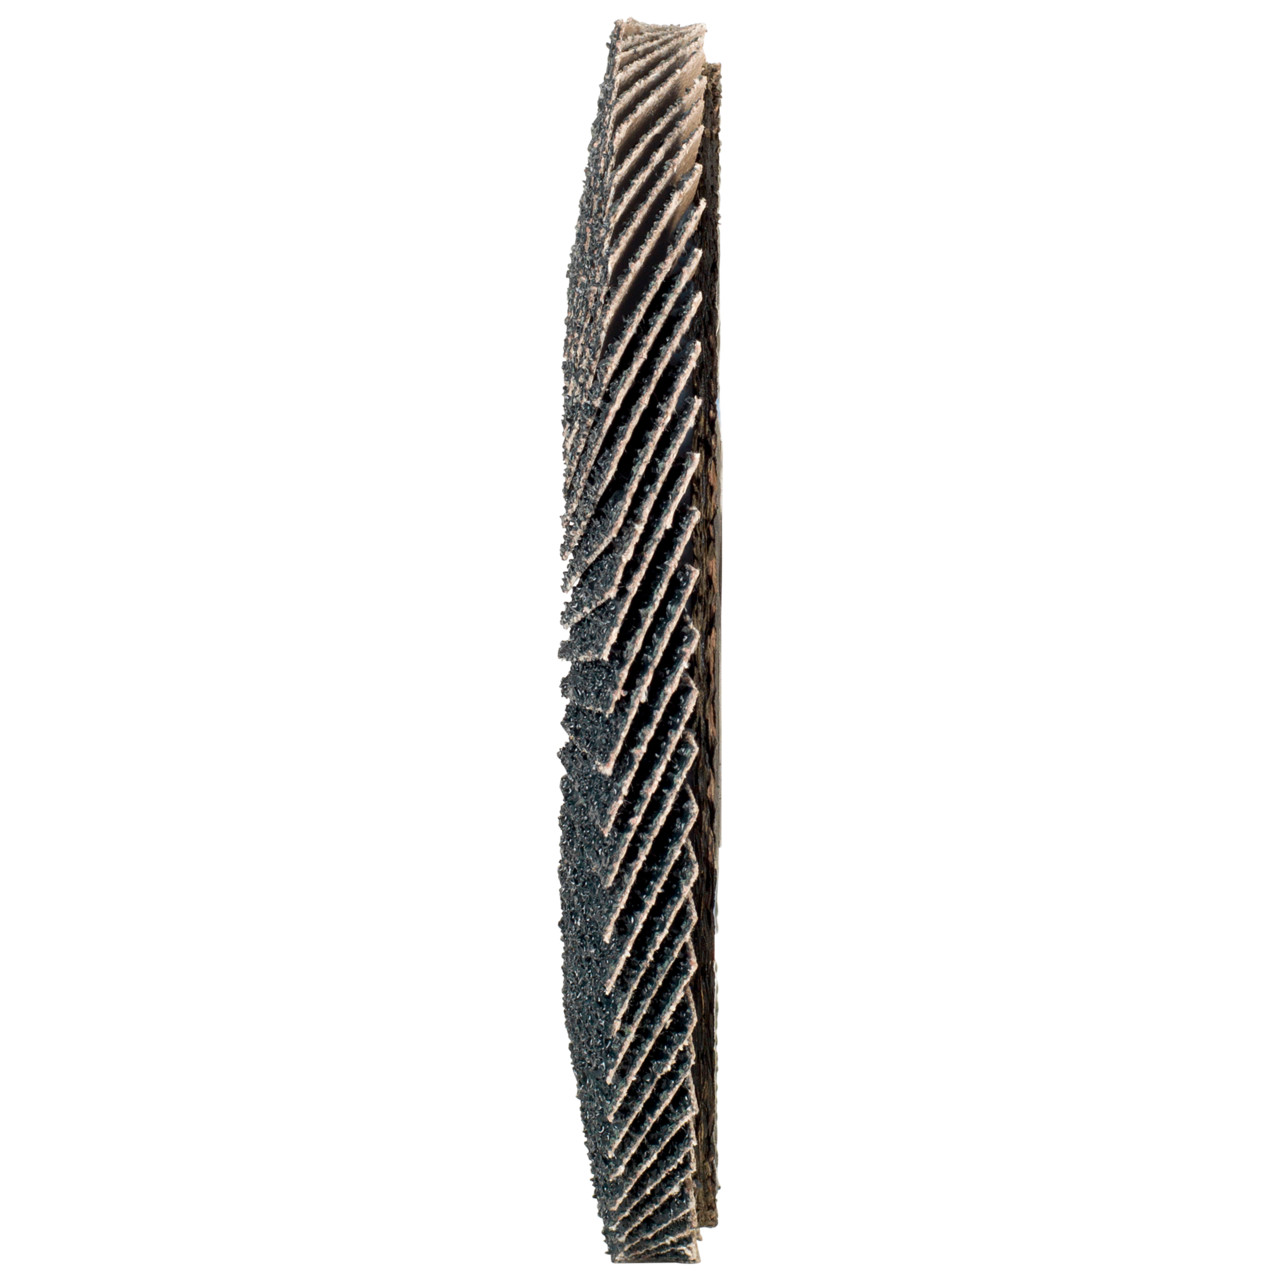 TYROLIT Fächerscheibe DxH 178x22,2 2in1 für Stahl & Edelstahl, P120, Form: 27A - gekröpfte Ausführung (Glasfaserträgerkörperausführung), Art. 643807